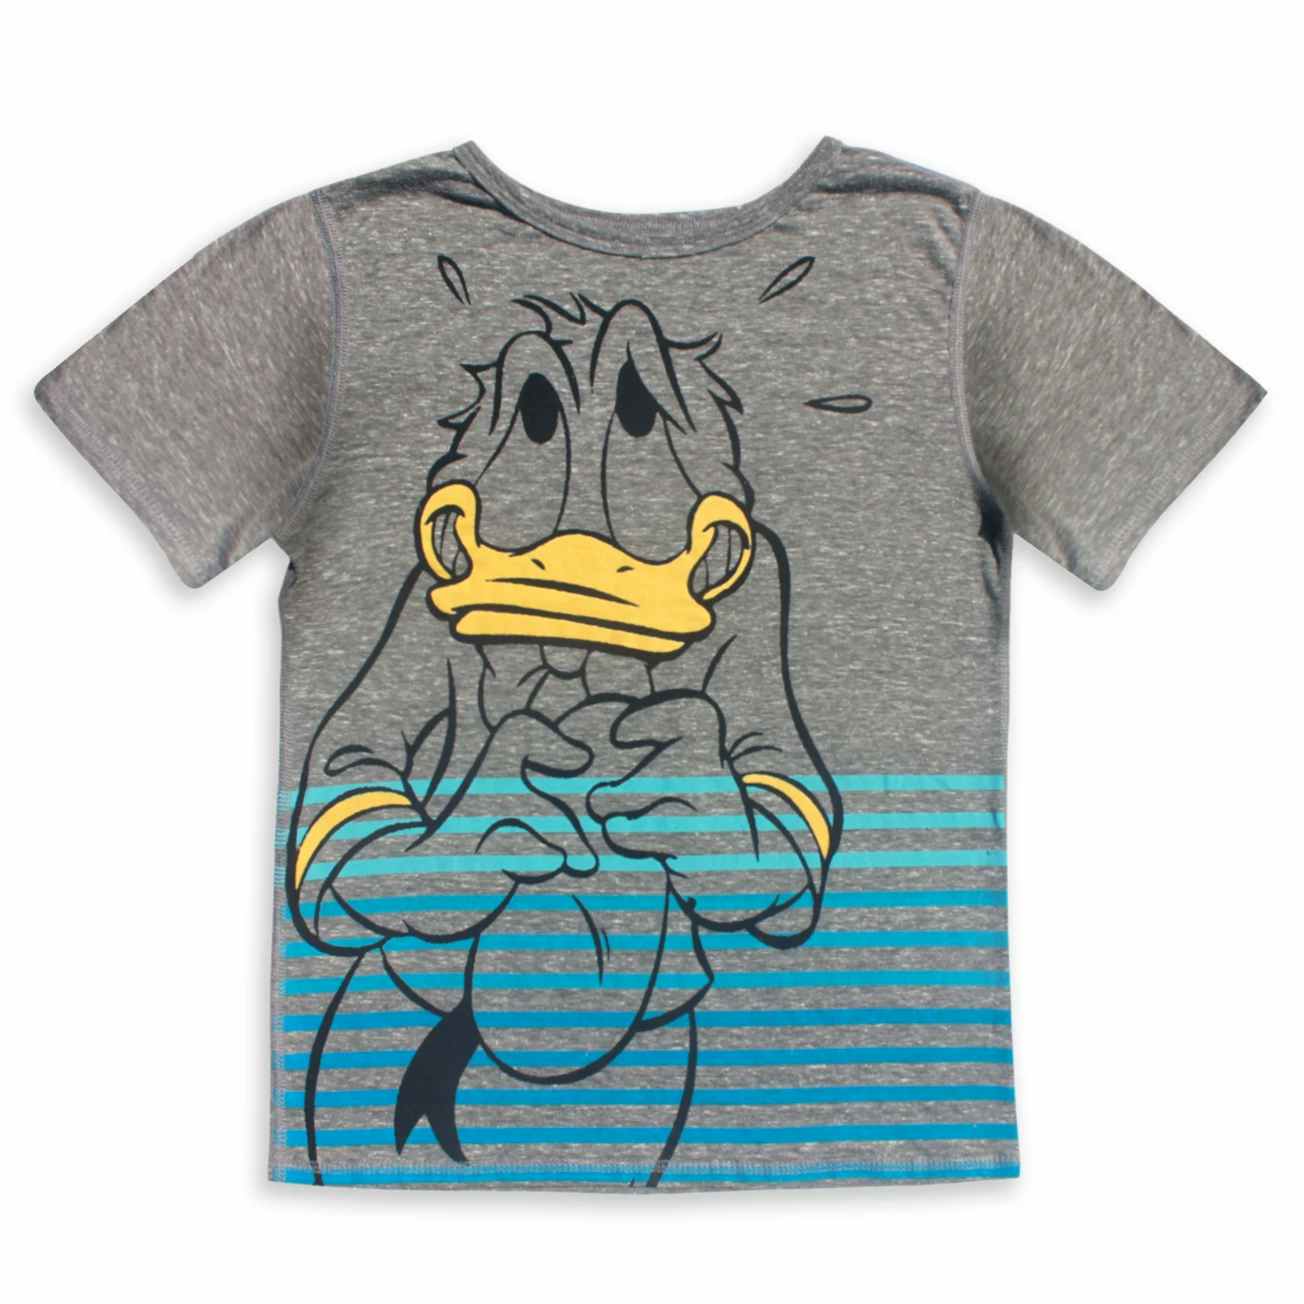 Donald Duck t-shirt